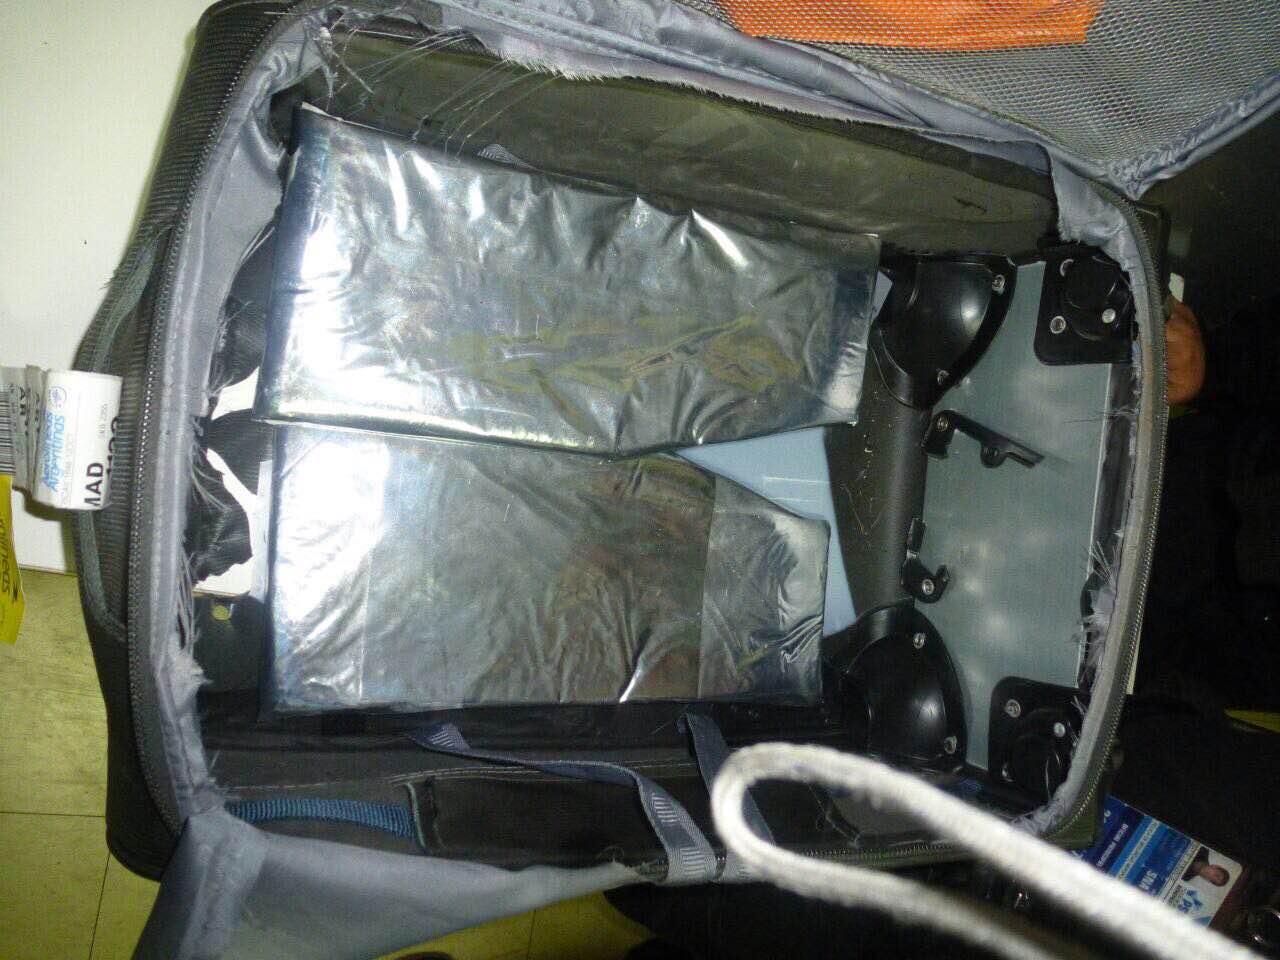 En el aeropuerto de Iguazú (IGR), la PSA detuvo a un pasajero con casi 3,5 kilos de cocaína